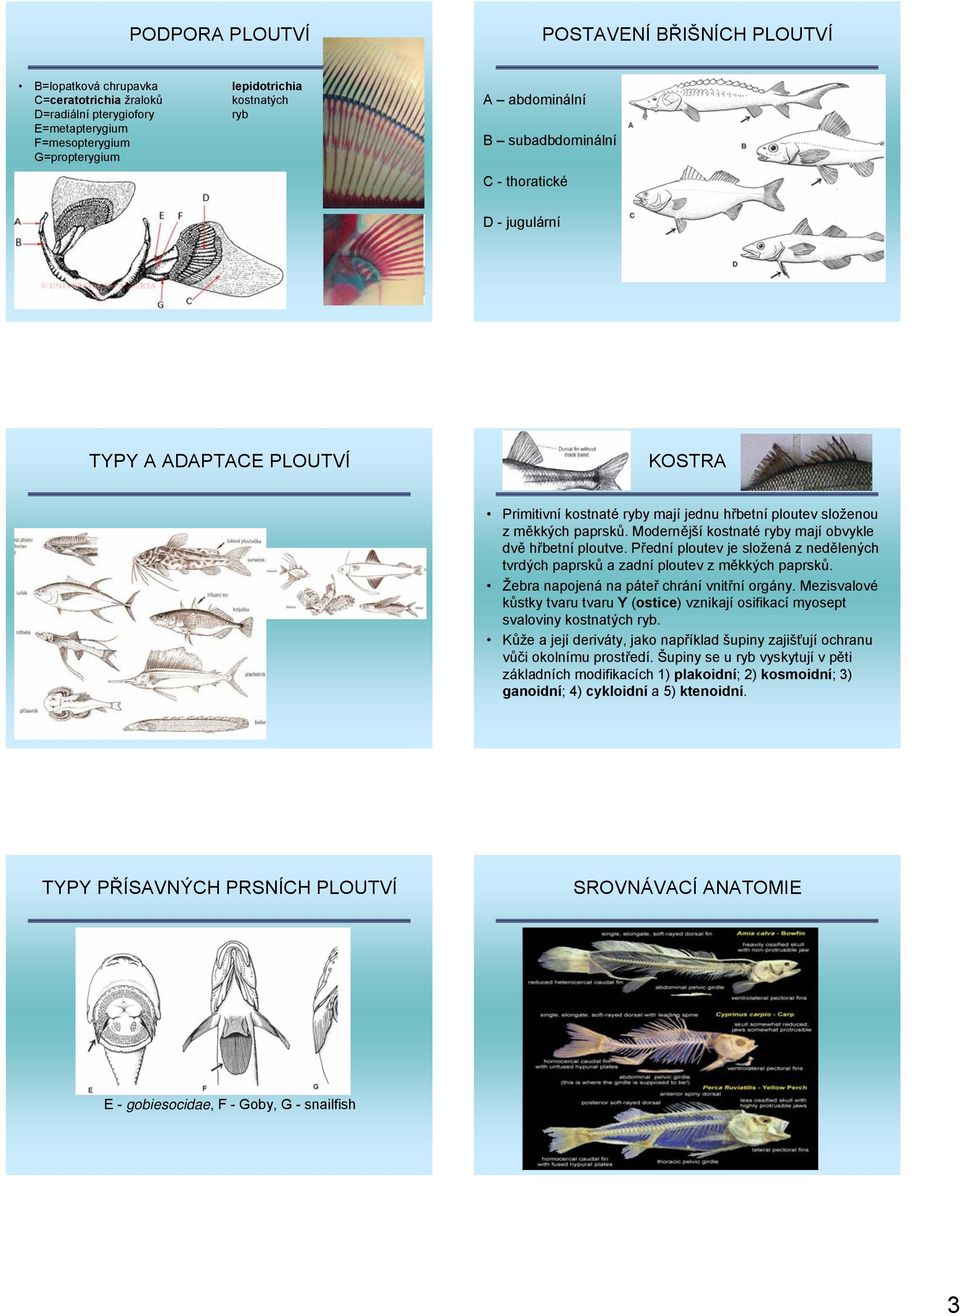 Modernější kostnaté ryby mají obvykle dvě hřbetní ploutve. Přední ploutev je složená z nedělených tvrdých paprsků a zadní ploutev z měkkých paprsků. Žebra napojená na páteř chrání vnitřní orgány.